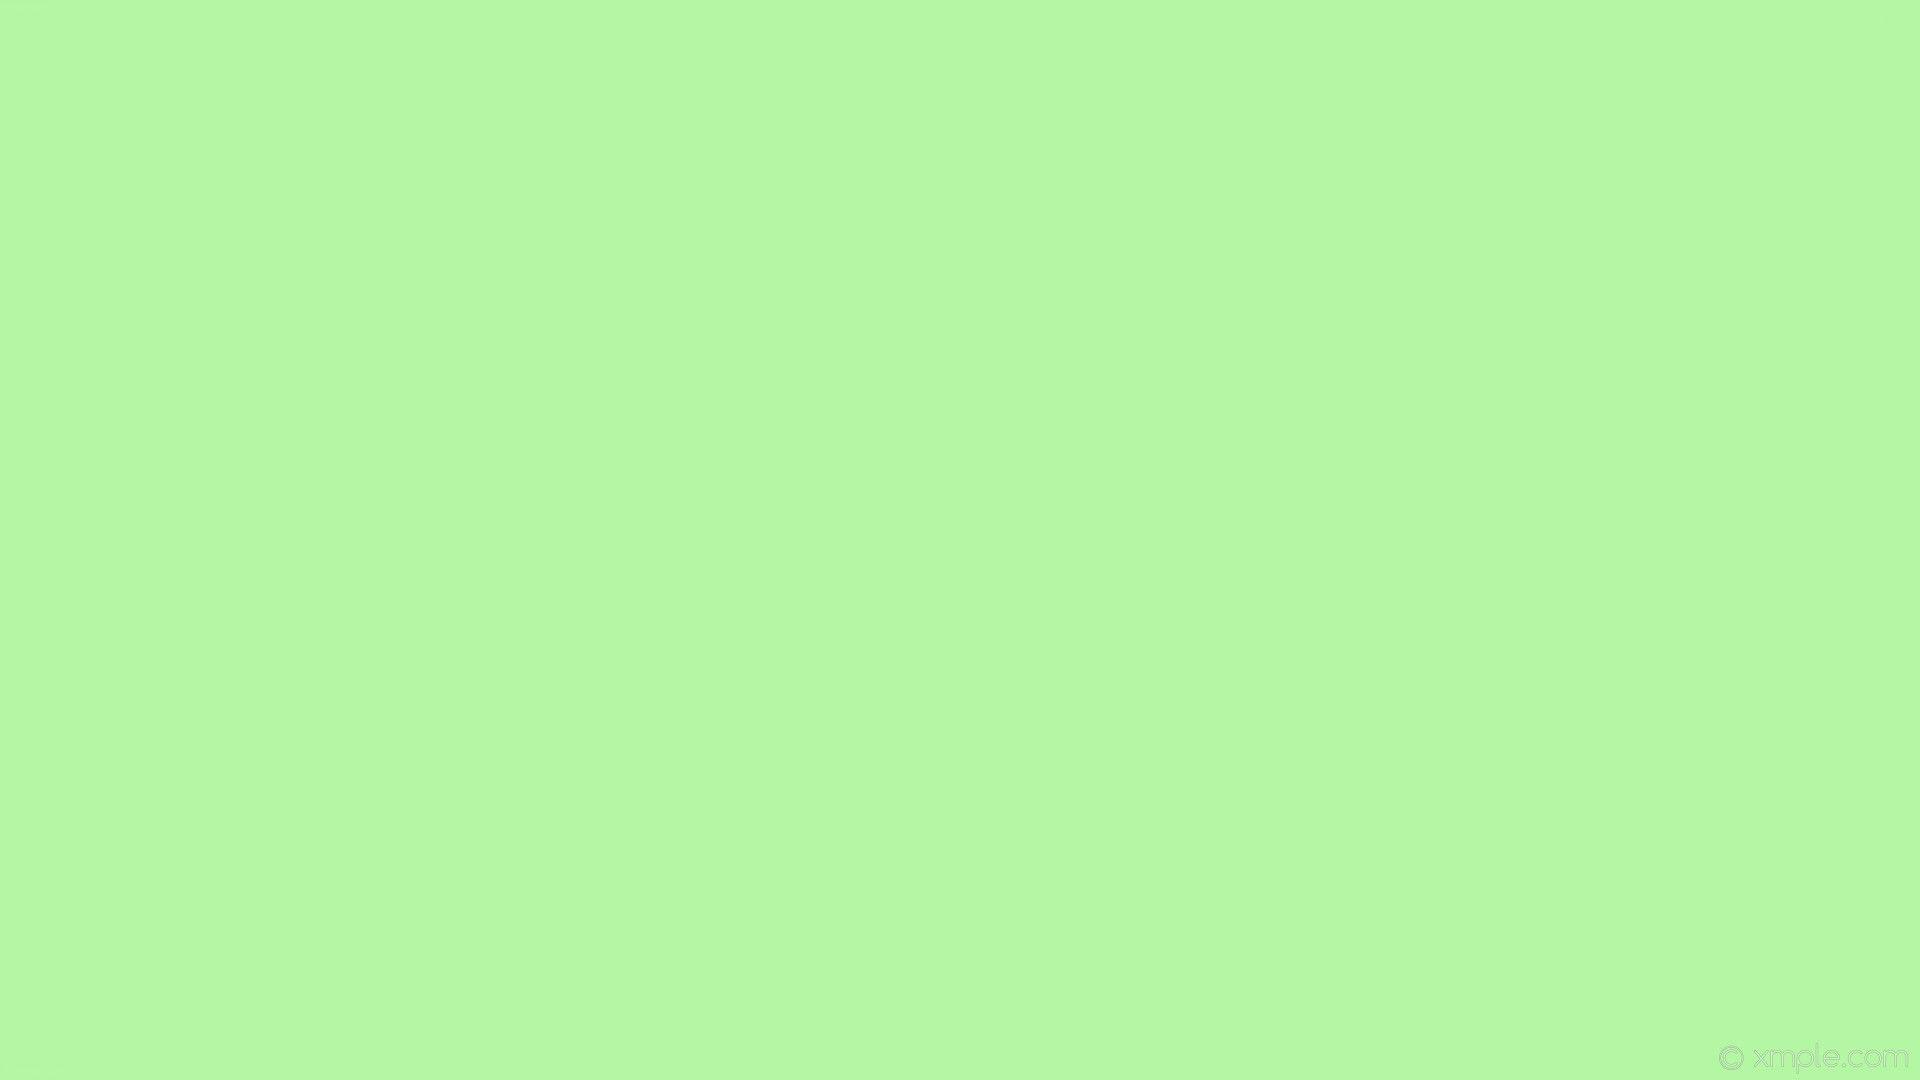 Hình nền xanh lá cây đơn sắc - Top Những Hình Ảnh Đẹp: Hình nền xanh lá cây đơn sắc mang đến cảm giác thoải mái, tươi mới và sự tươi trẻ cho màn hình điện thoại của bạn. Bức ảnh nổi bật trong \